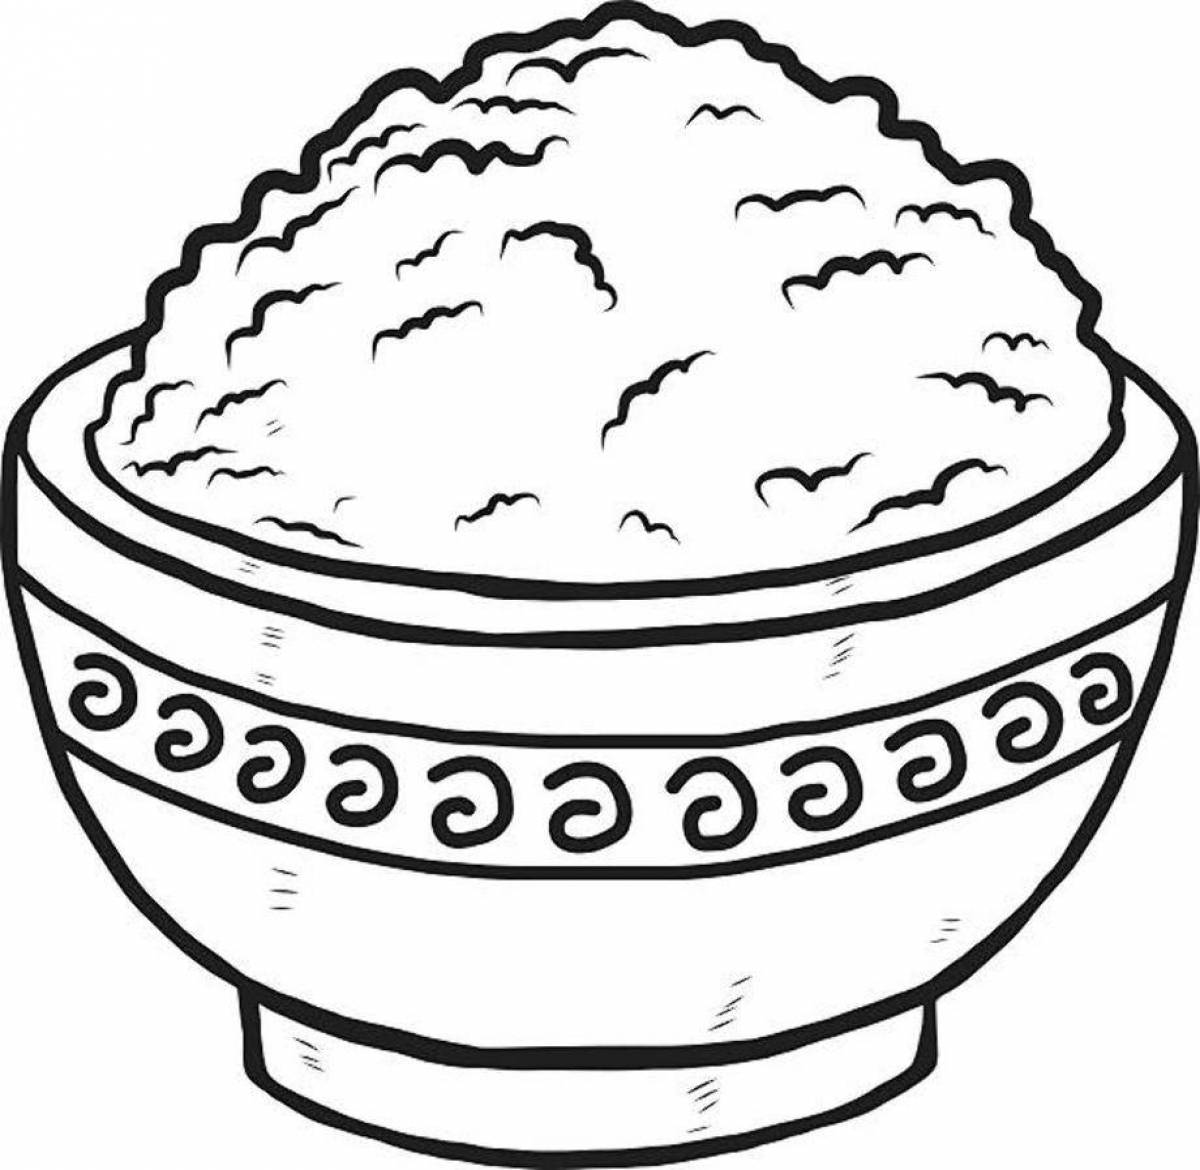 Multicolored pot of porridge